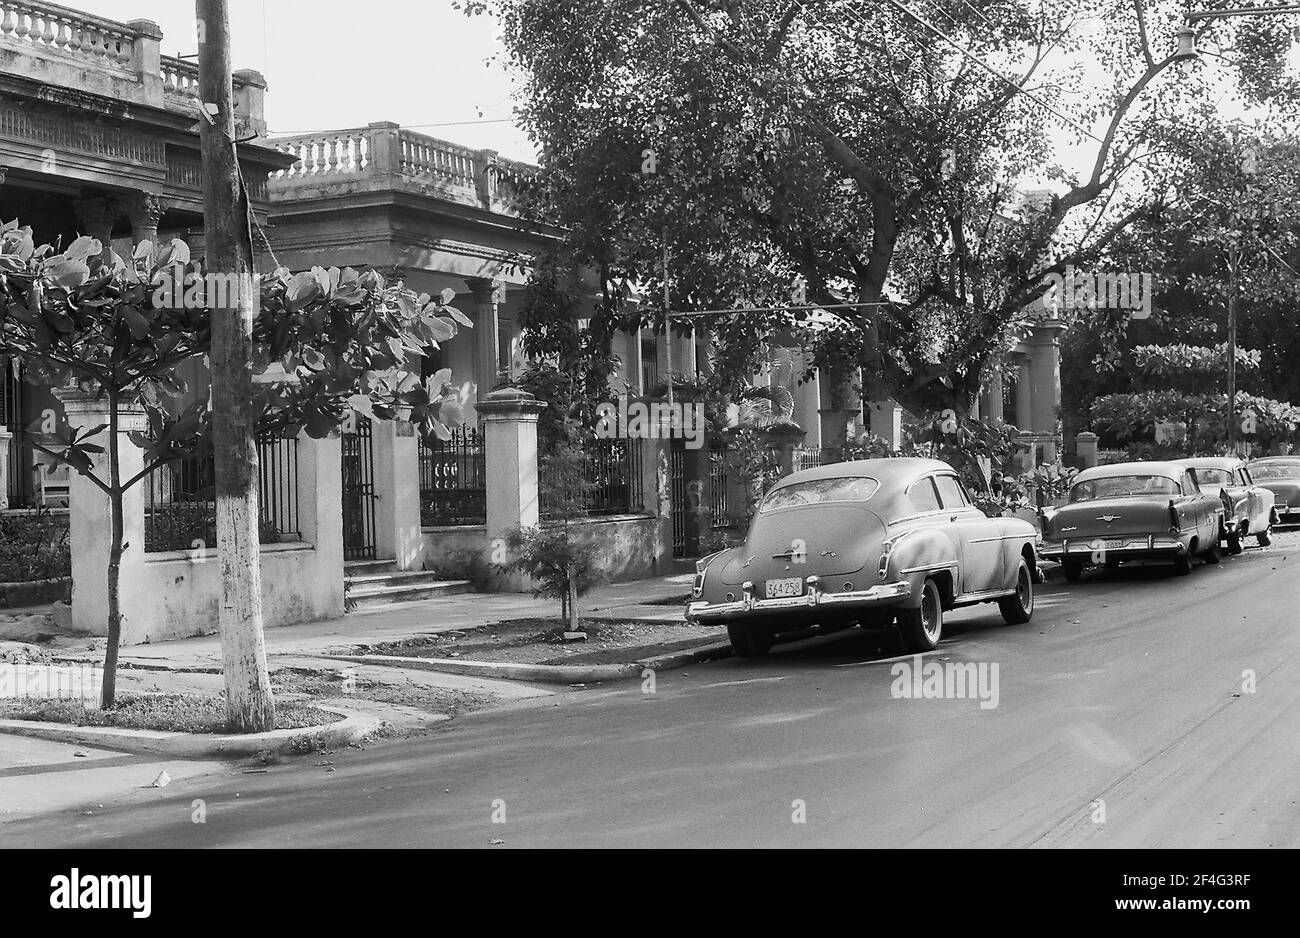 Auto d'epoca parcheggiate sul lato di una strada residenziale alberata con edifici coloniali recintati, nel quartiere di Vedado, l'Avana, Cuba, 1964. Dalla collezione di fotografie Deena Stryker. () Foto Stock